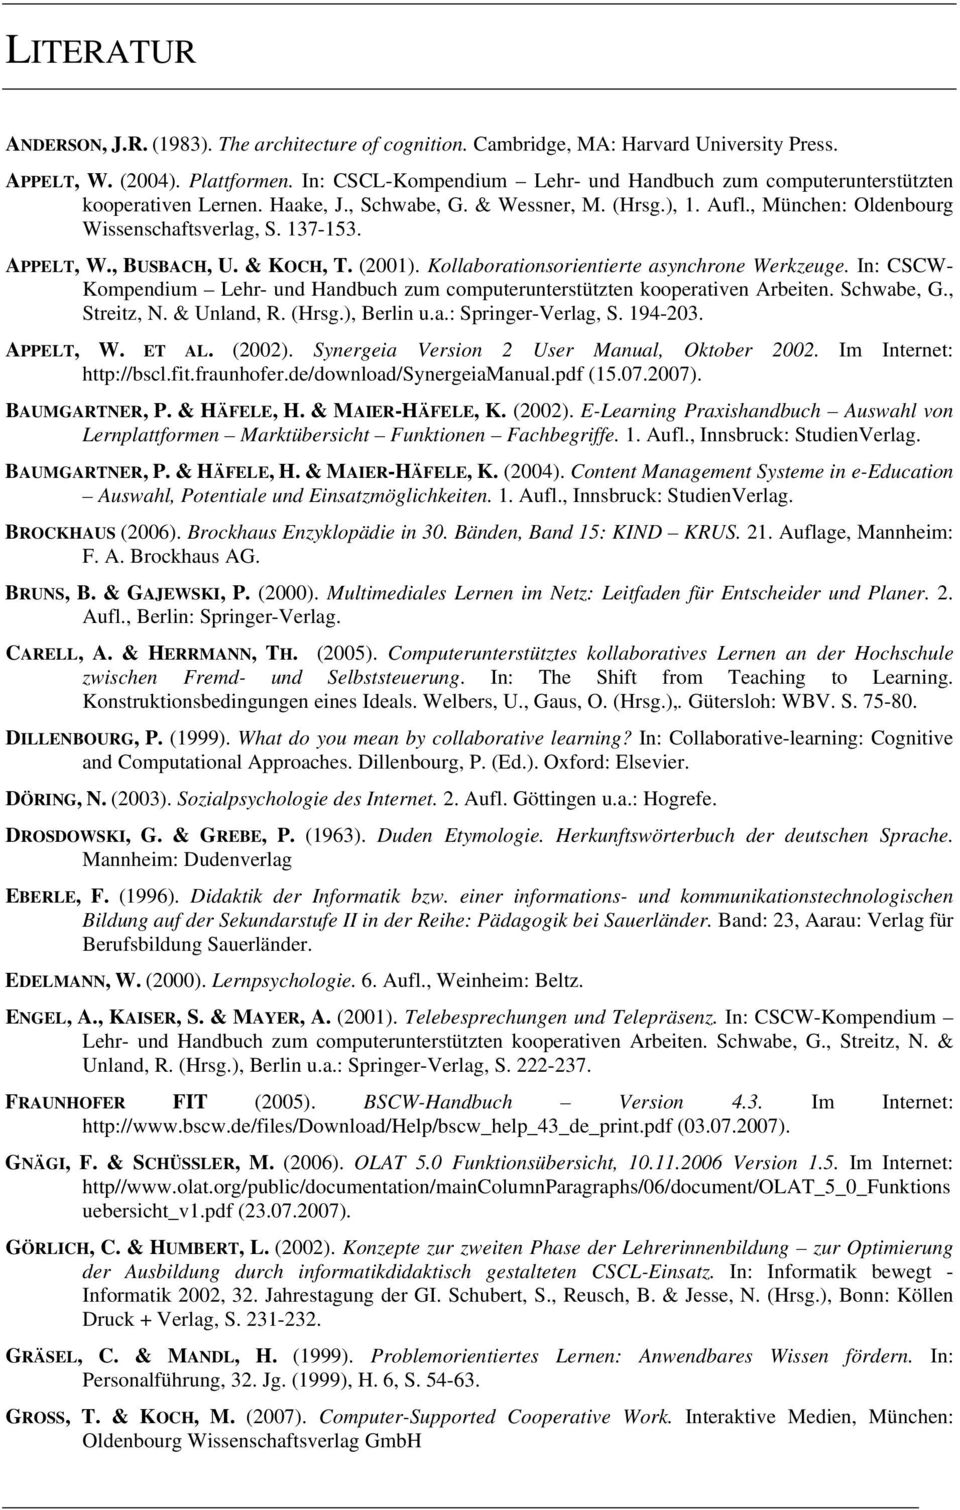 APPELT, W., BUSBACH, U. & KOCH, T. (2001). Kollaborationsorientierte asynchrone Werkzeuge. In: CSCW- Kompendium Lehr- und Handbuch zum computerunterstützten kooperativen Arbeiten. Schwabe, G.